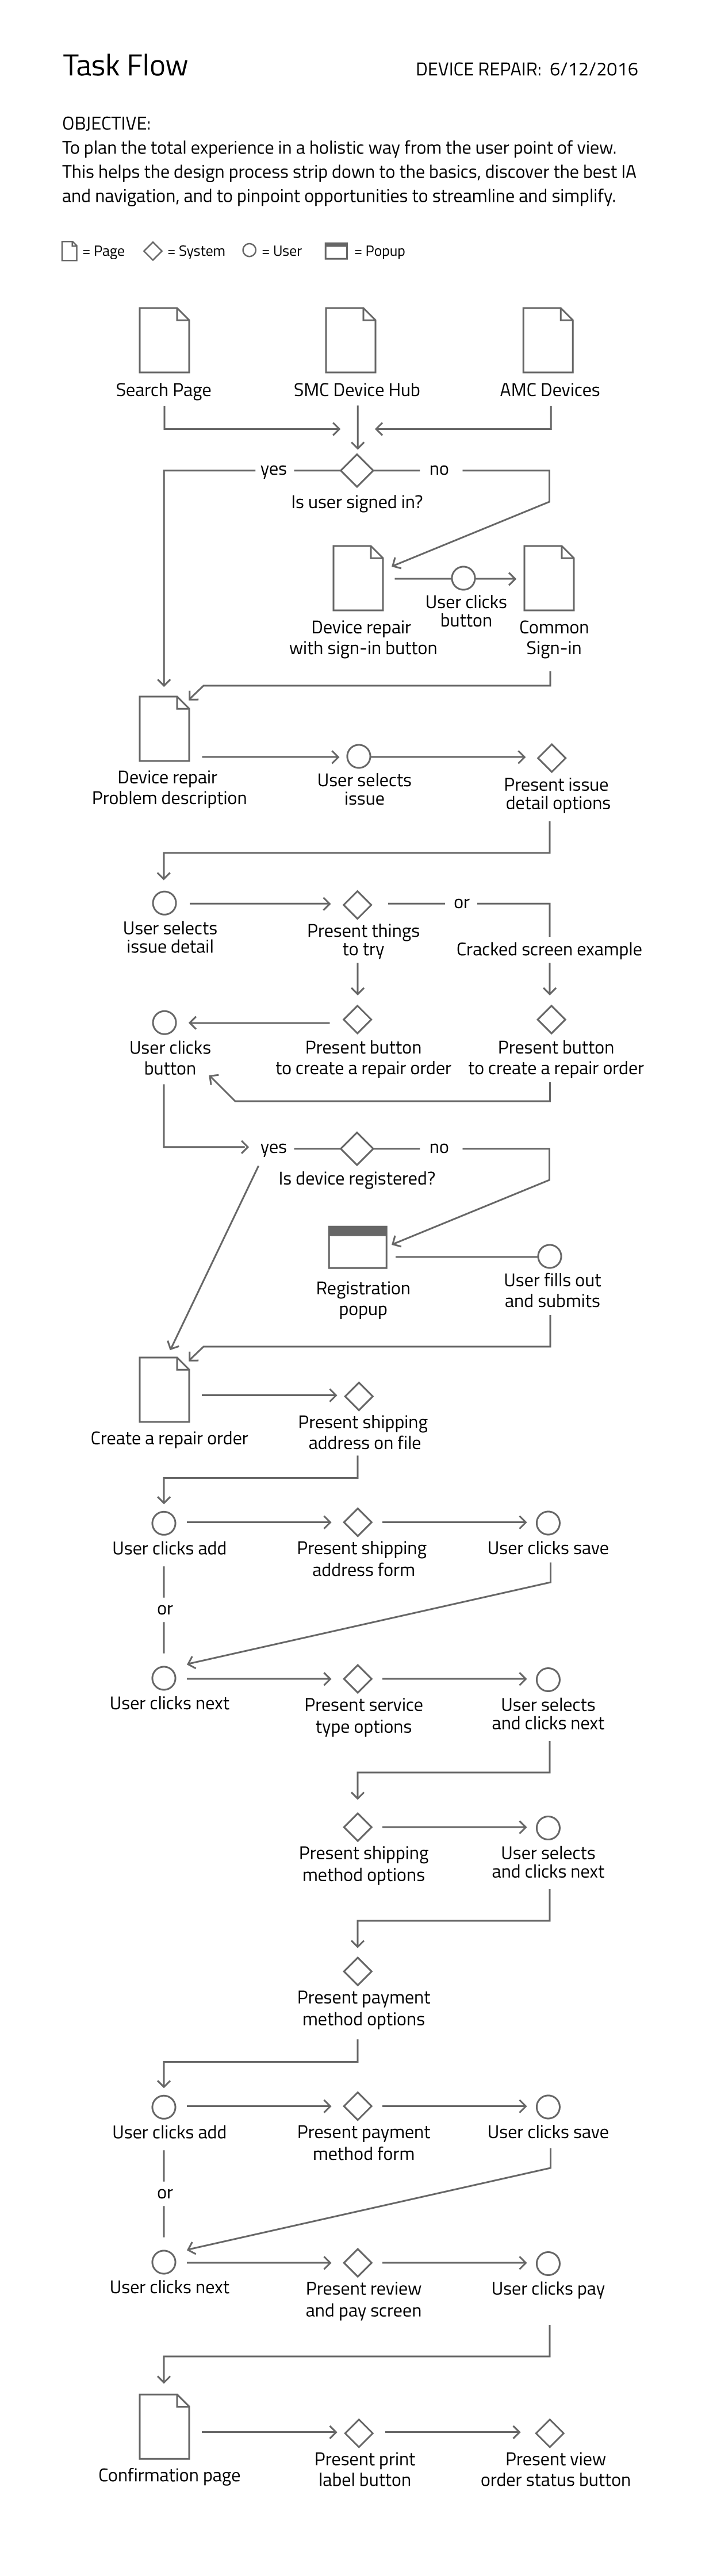 Task flow image